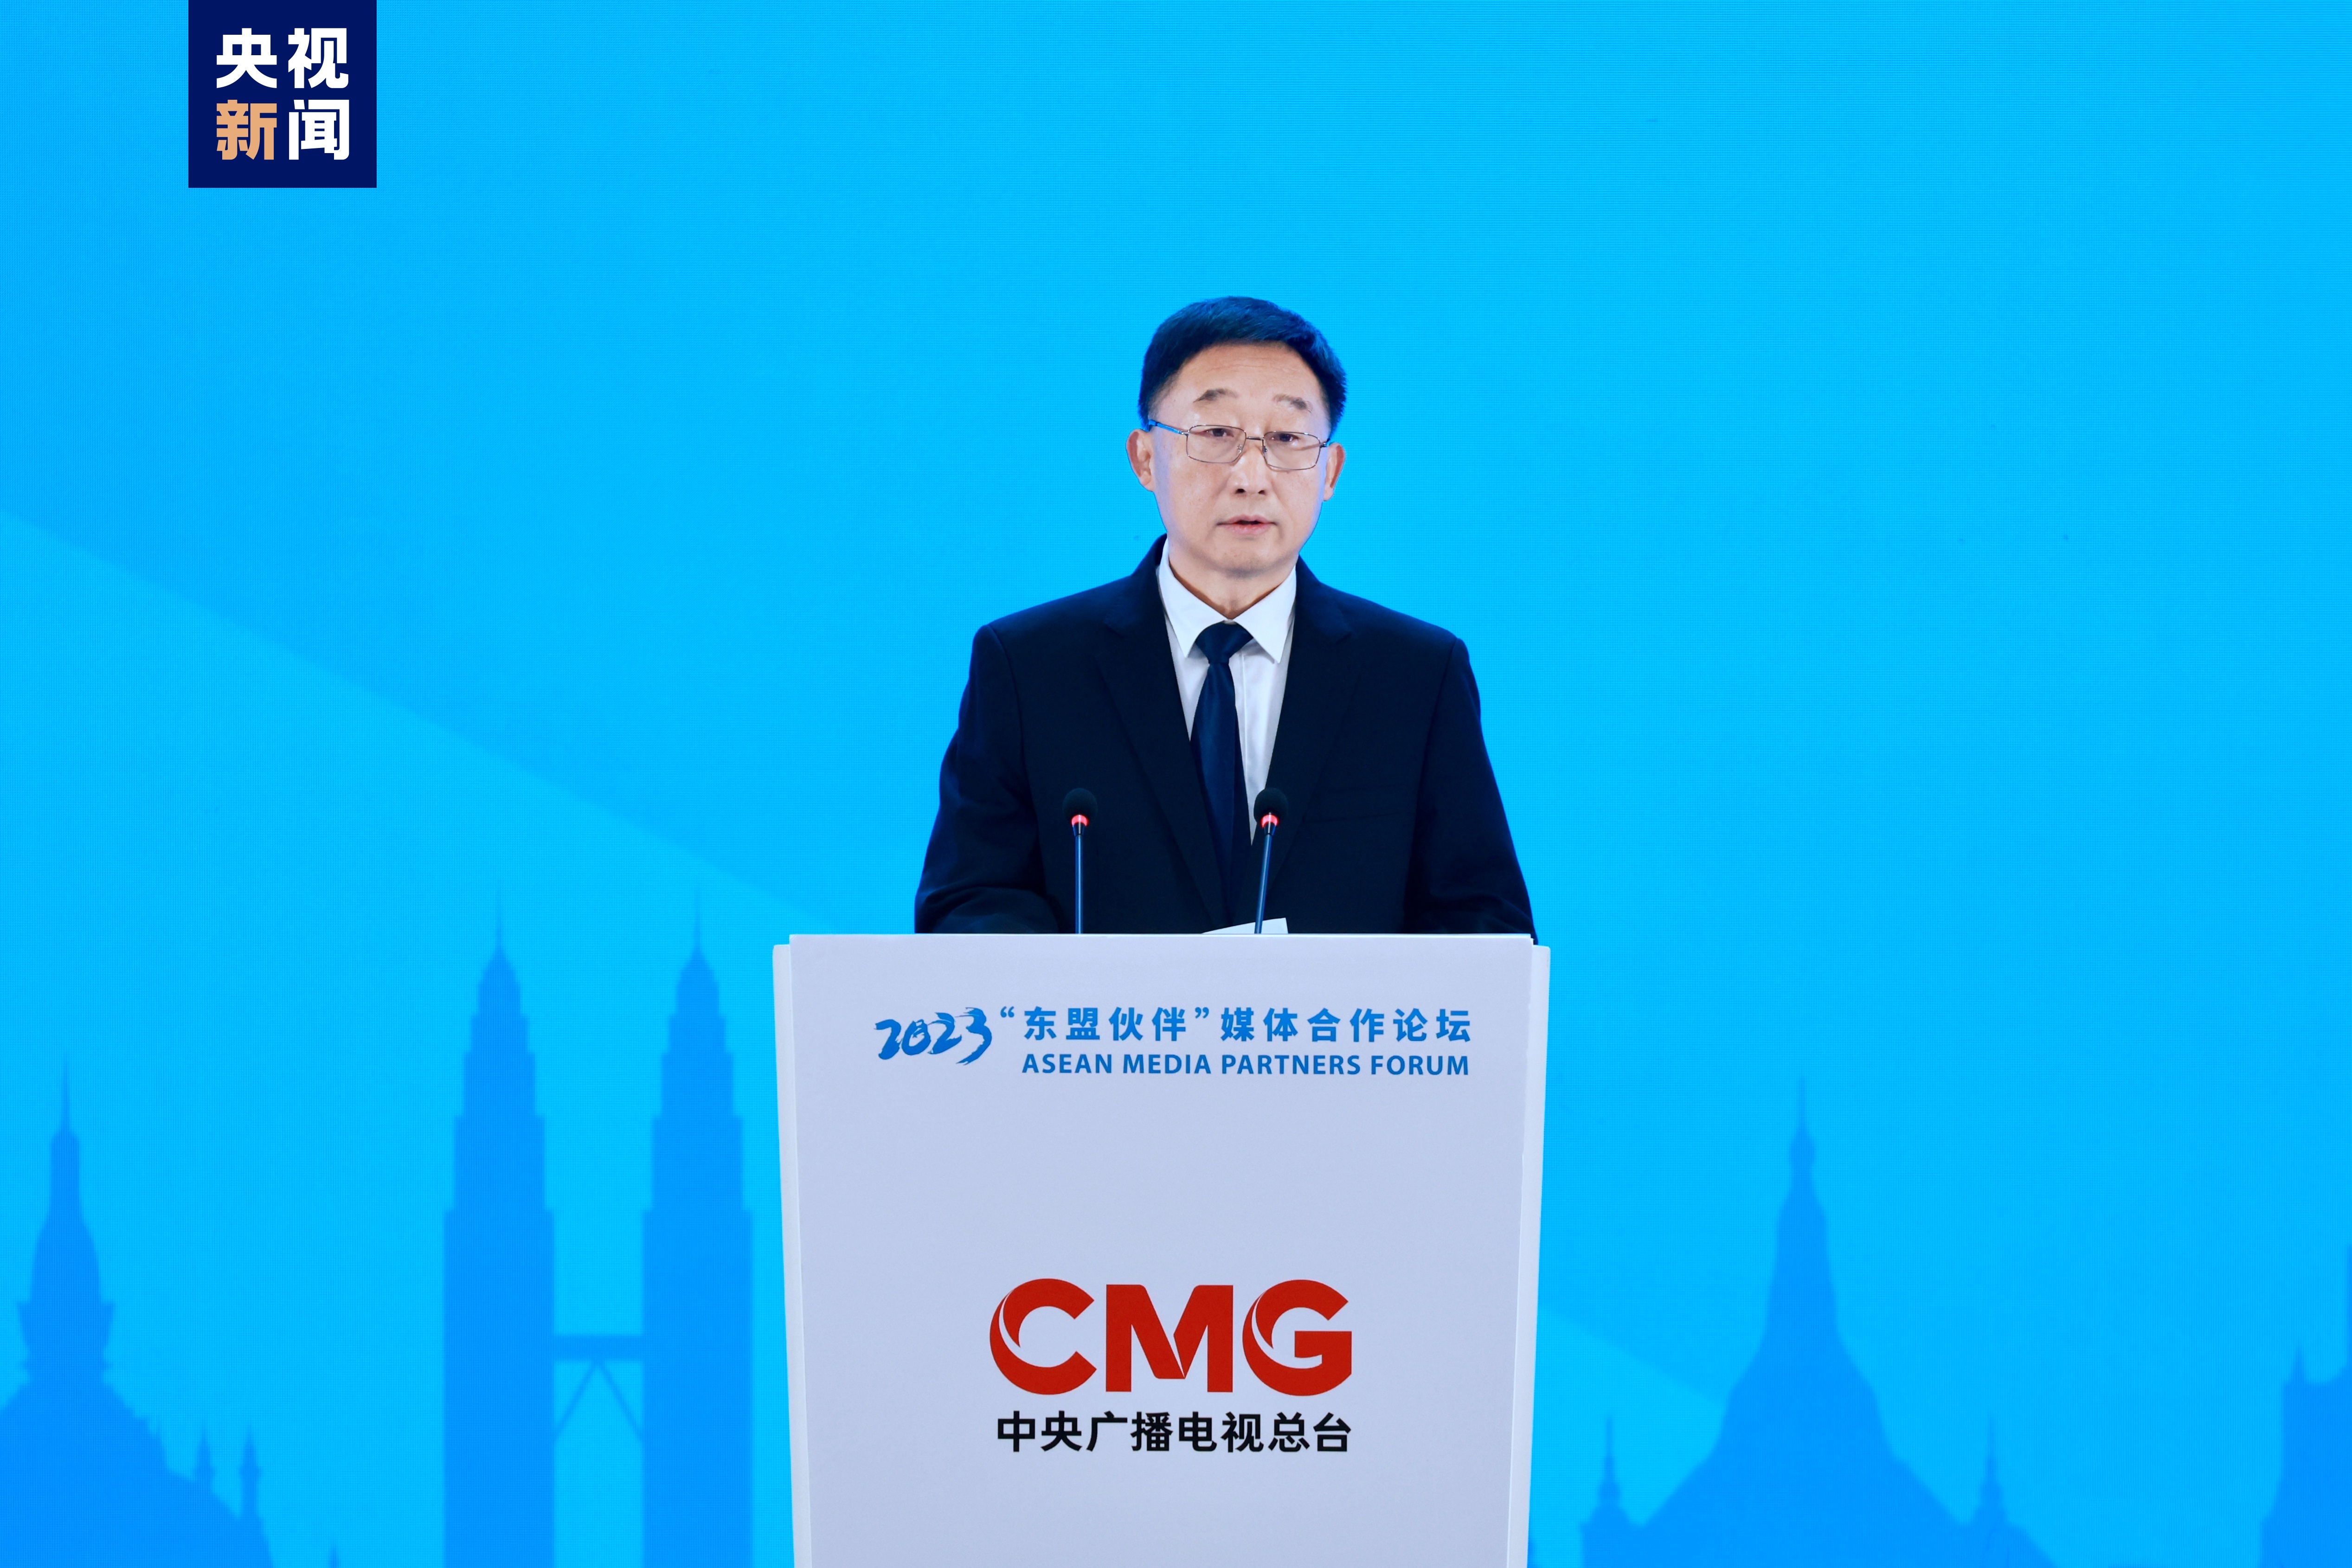 Liu Ning, sekretarz Komitetu Partii Regionu Autonomicznego Guangxi Zhuang i przewodniczący Stałego Komitetu Regionalnego Kongresu Ludowego, przemawia podczas ceremonii otwarcia Forum Partnerów Medialnych ASEAN 2023 w dniu 6 czerwca 2023 r.  /CMG